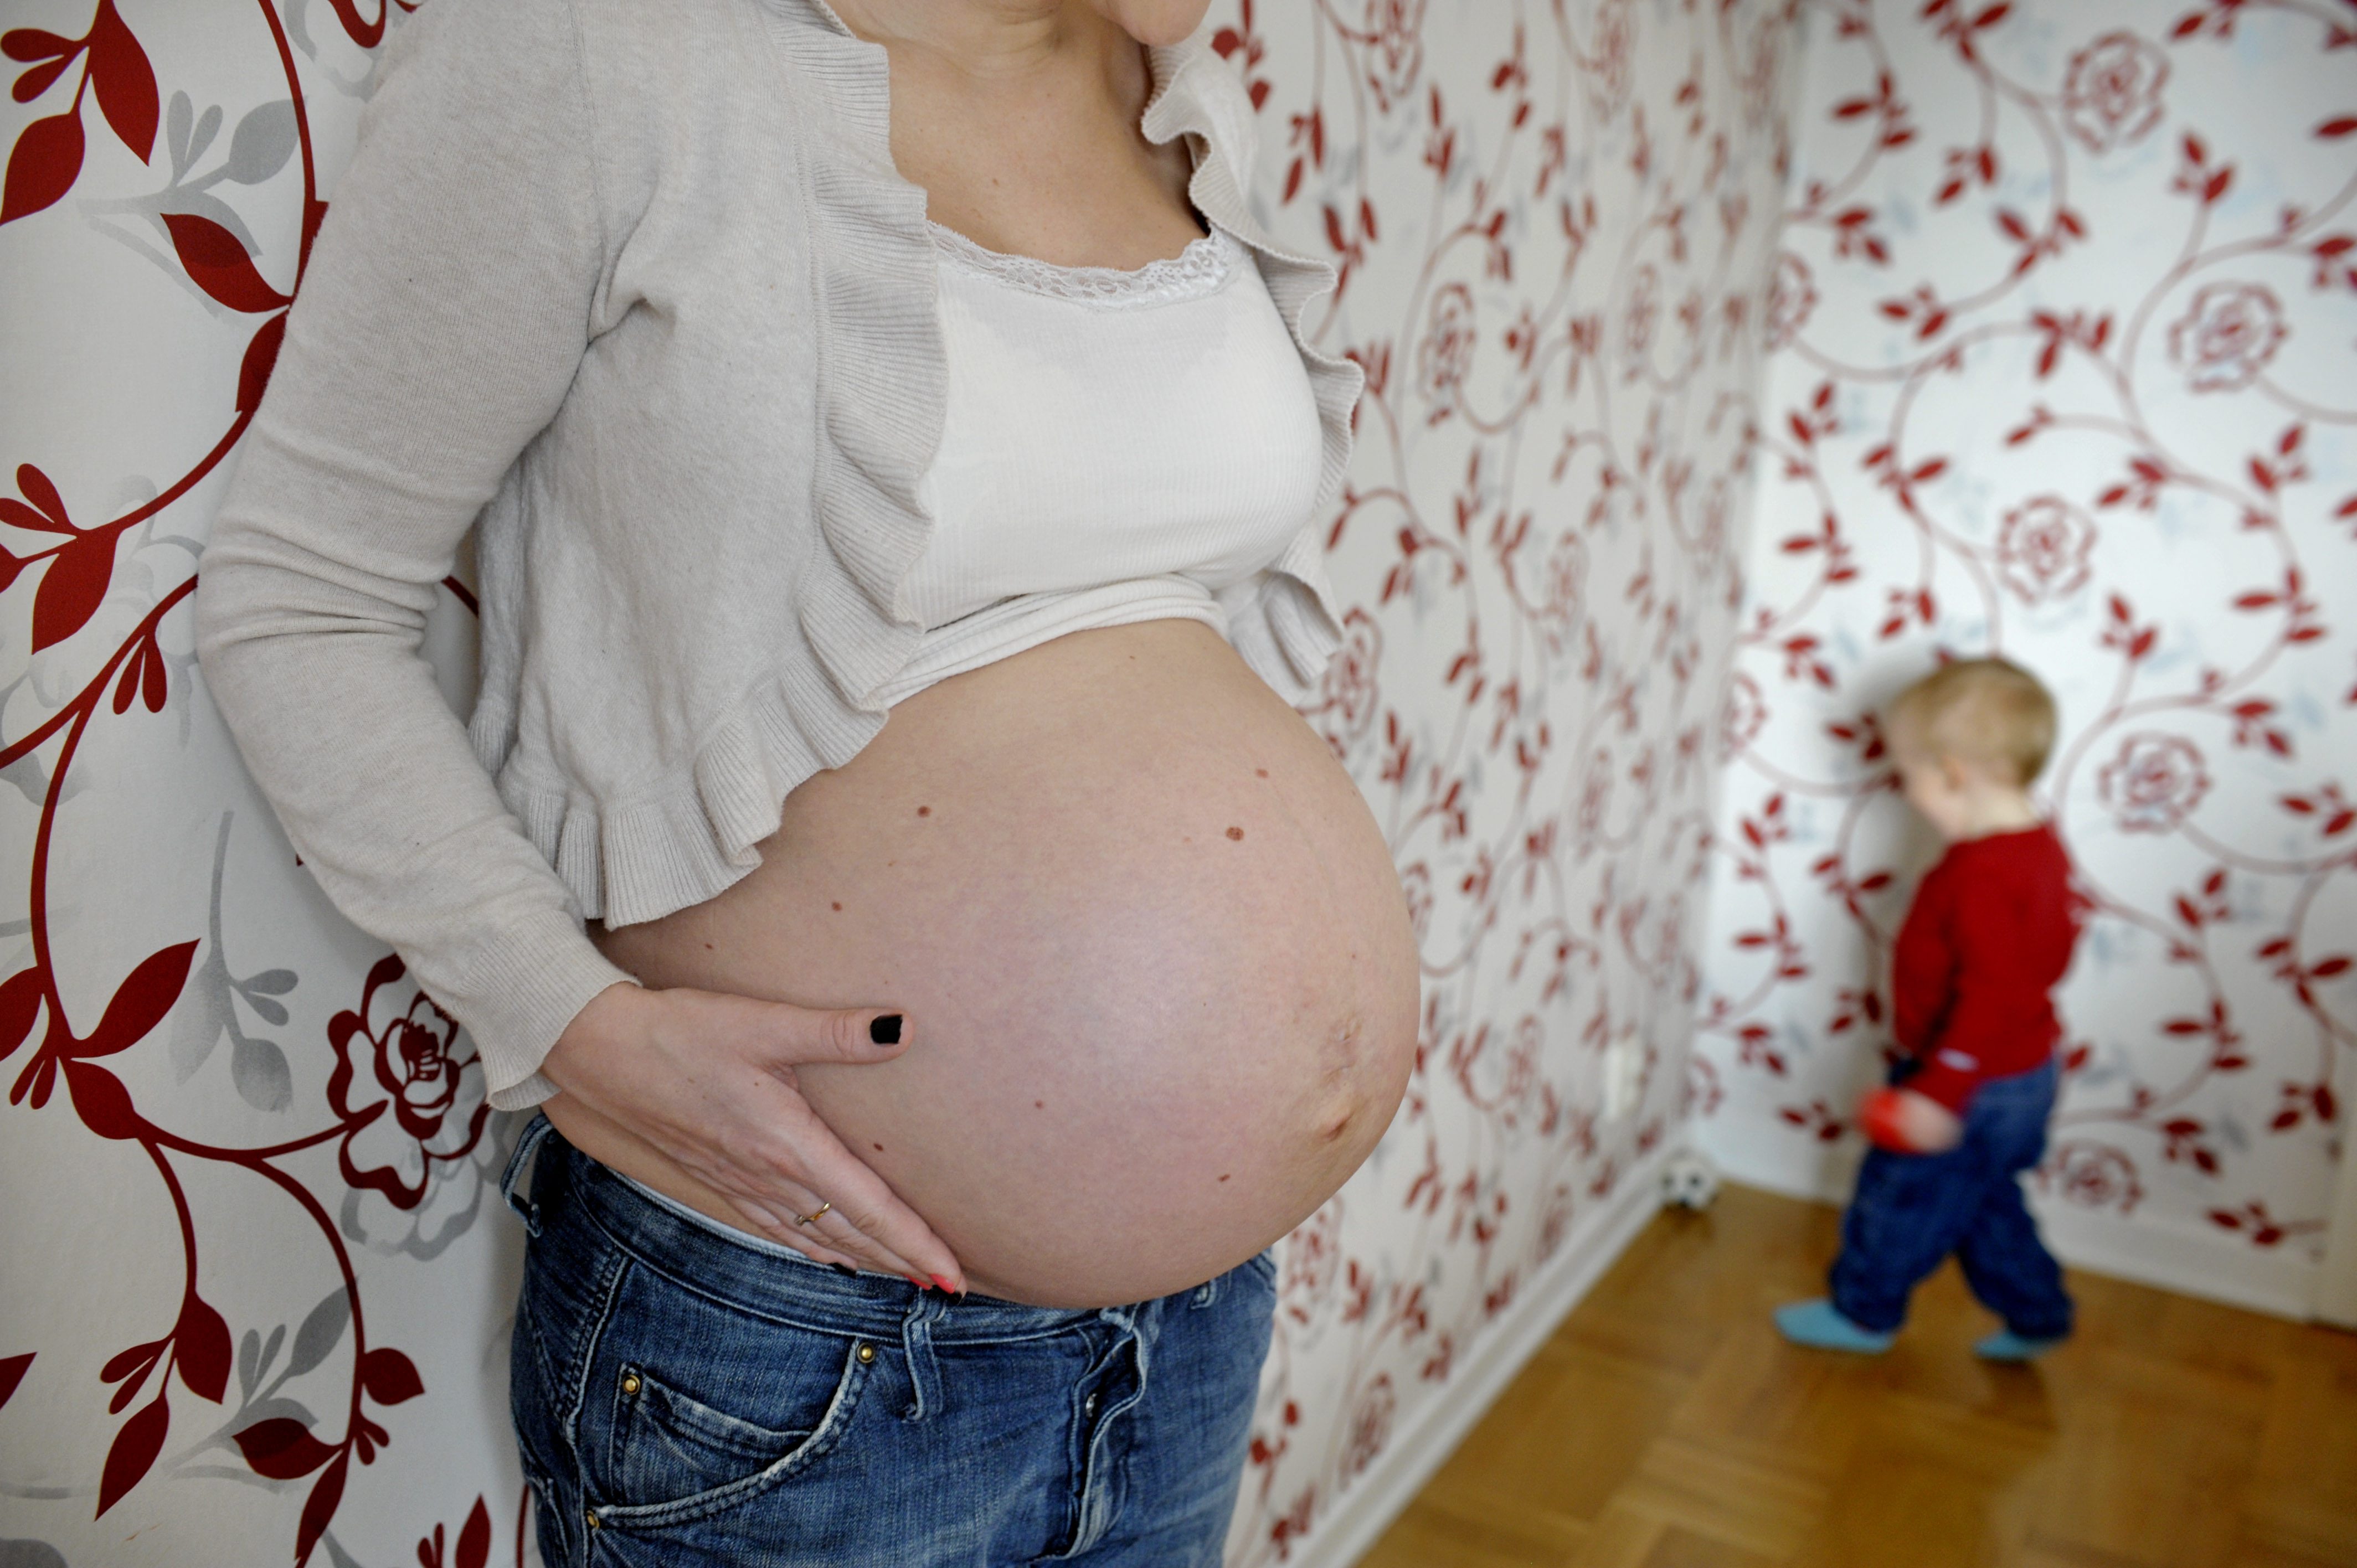 50 000 gravida kvinnor deltog i undersökningen.